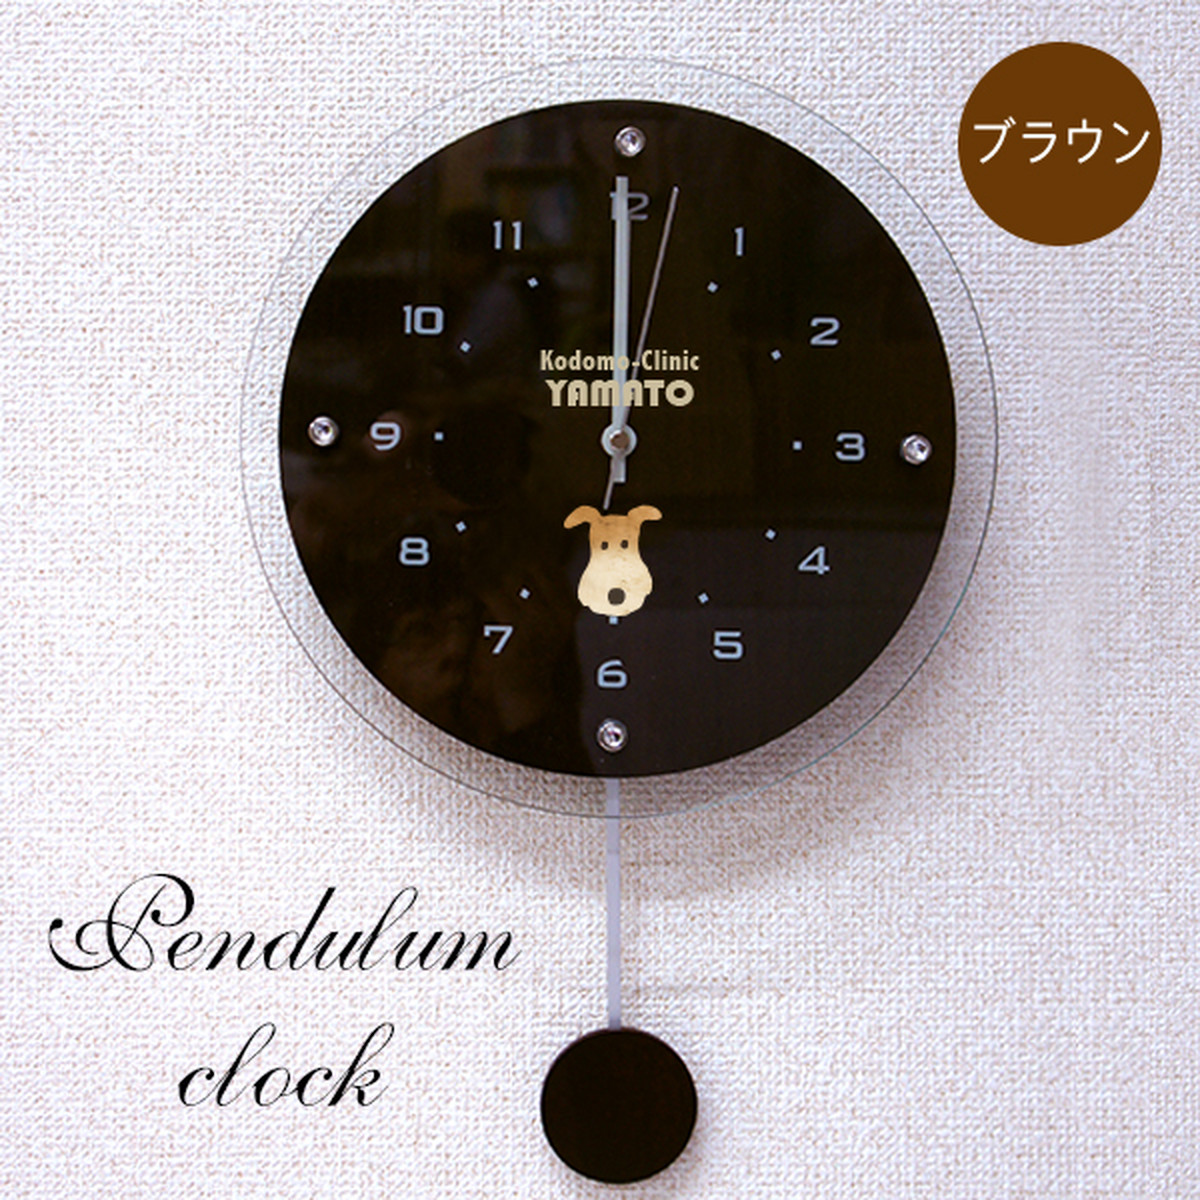 開店祝いに ロゴ入り振り子時計 オーダーメイド 壁掛け時計 電波時計 チクタク屋 ココ 写真時計 名入れ オーダーメイド時計の通販